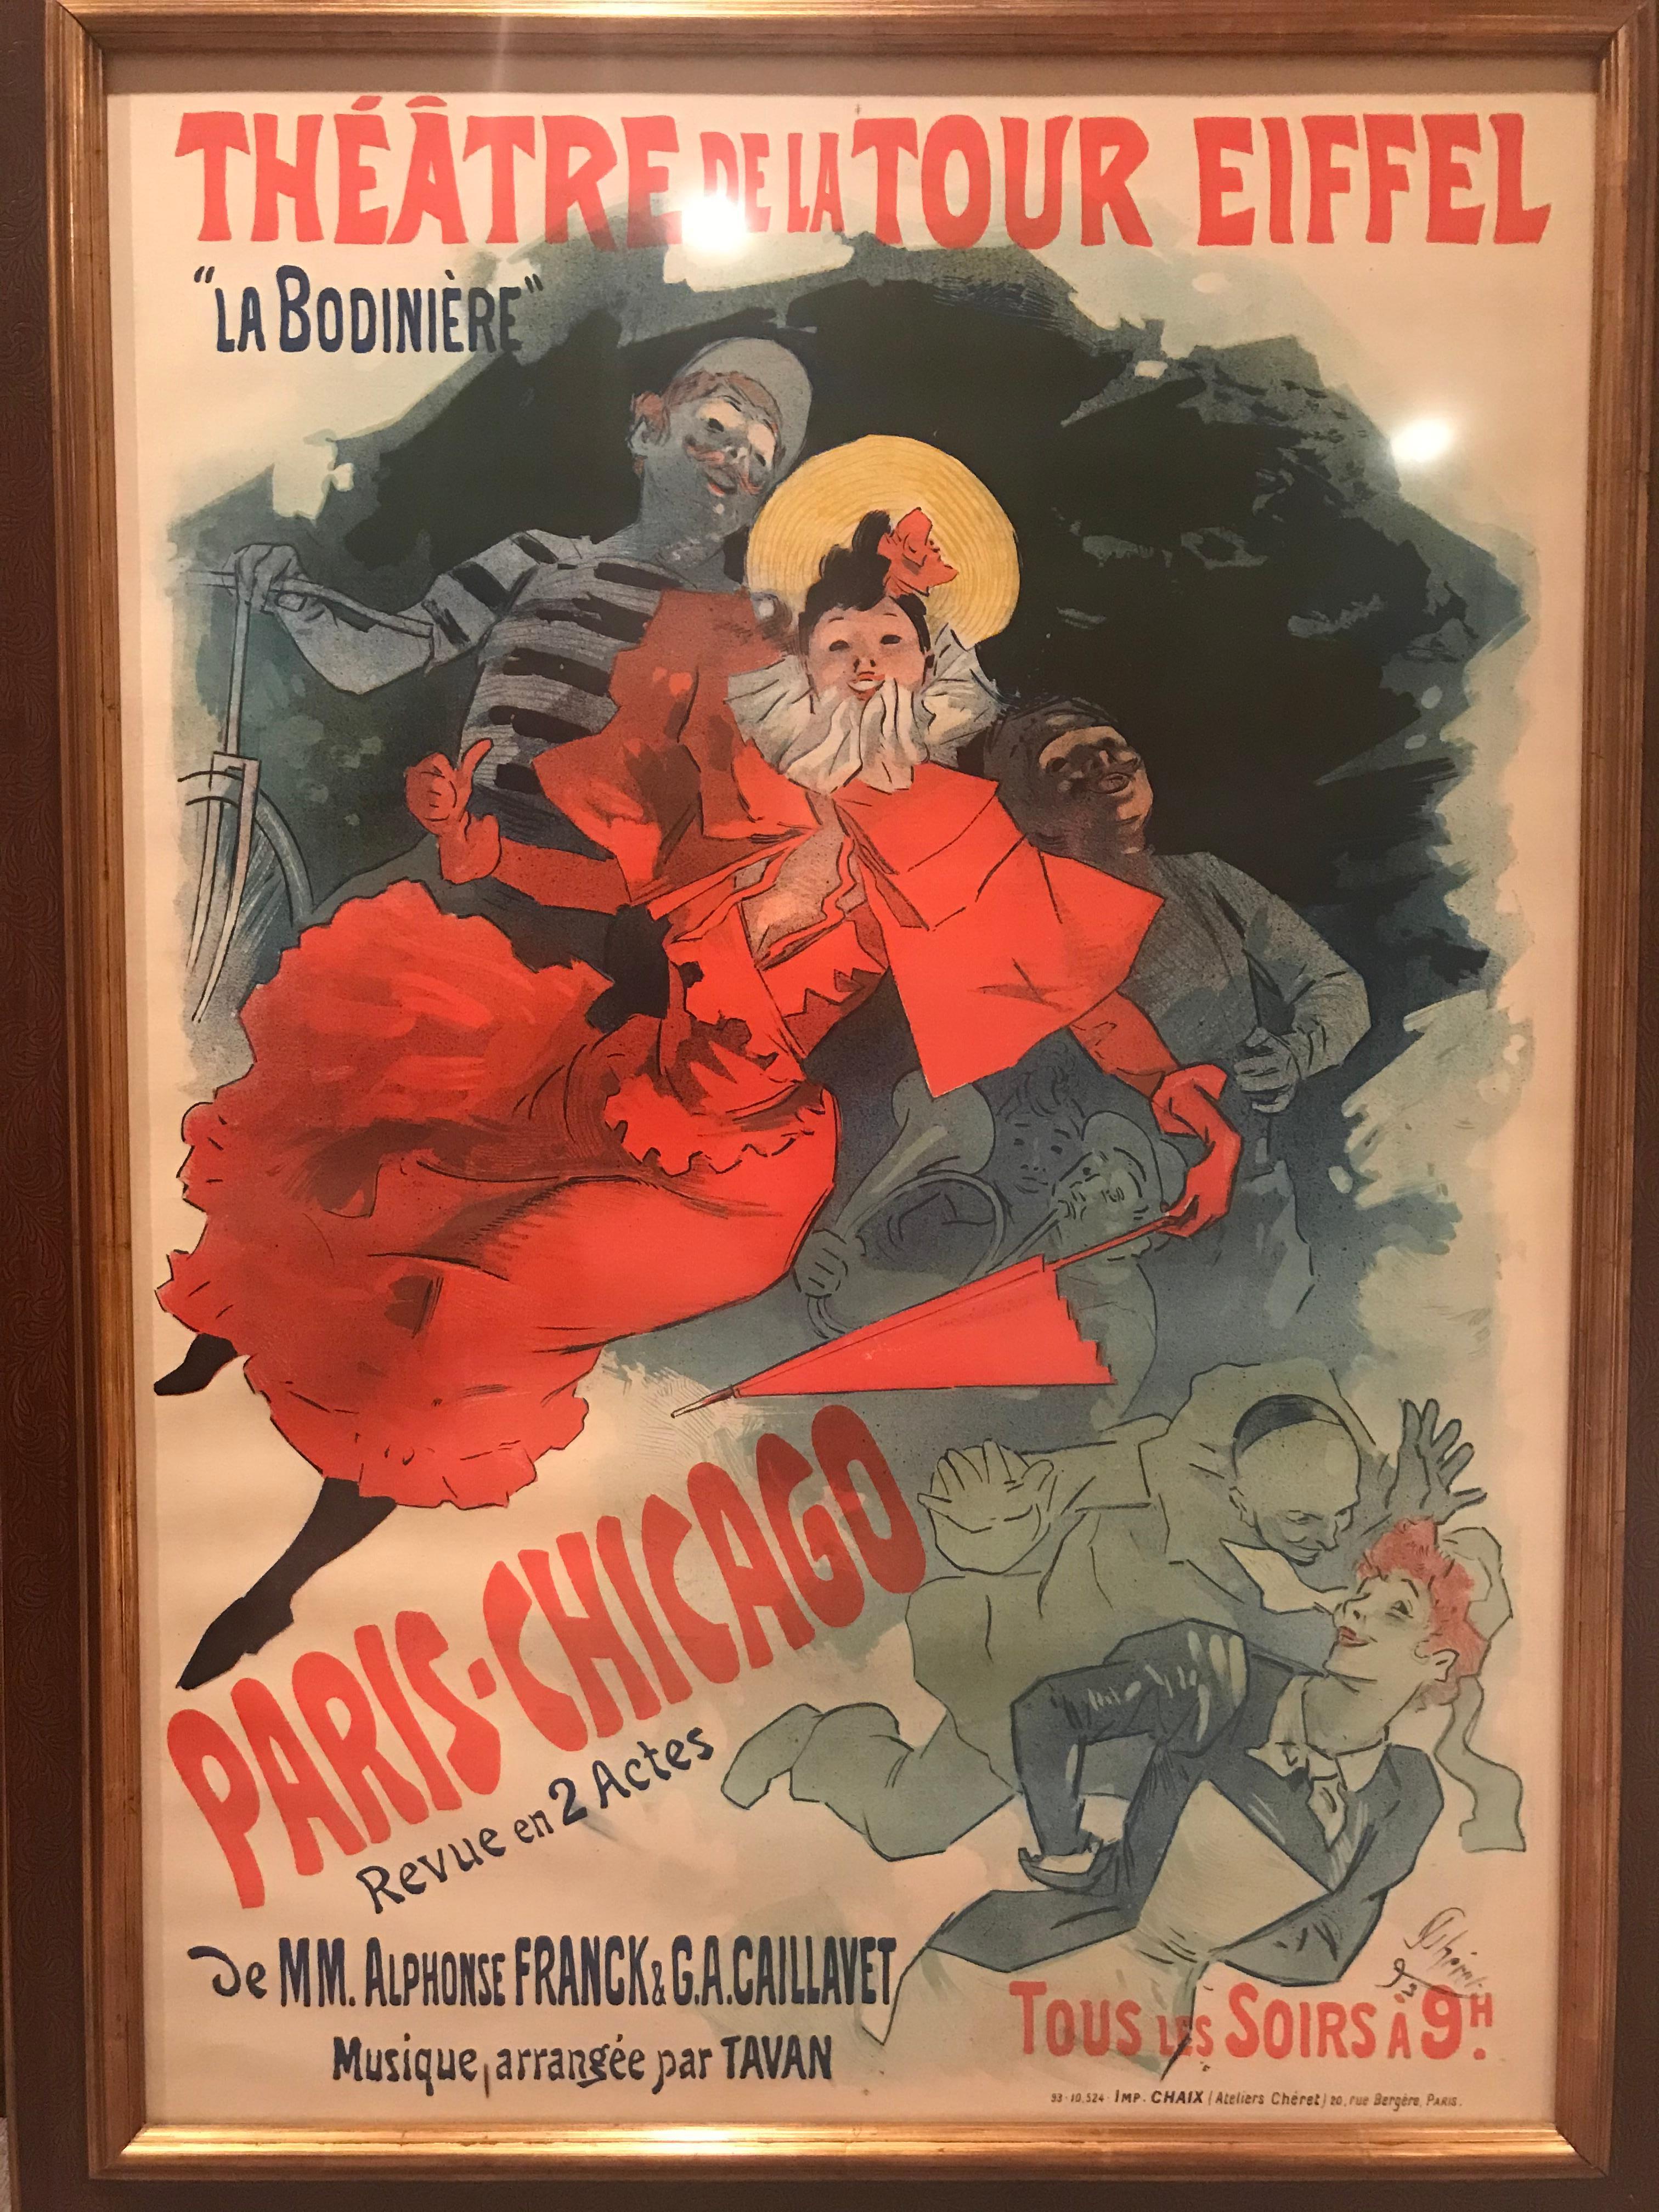 ‘La Bodinière,’ Théatre de La Tour Eiffel, Art Nouveau poster by Jules Chéret
Dated 